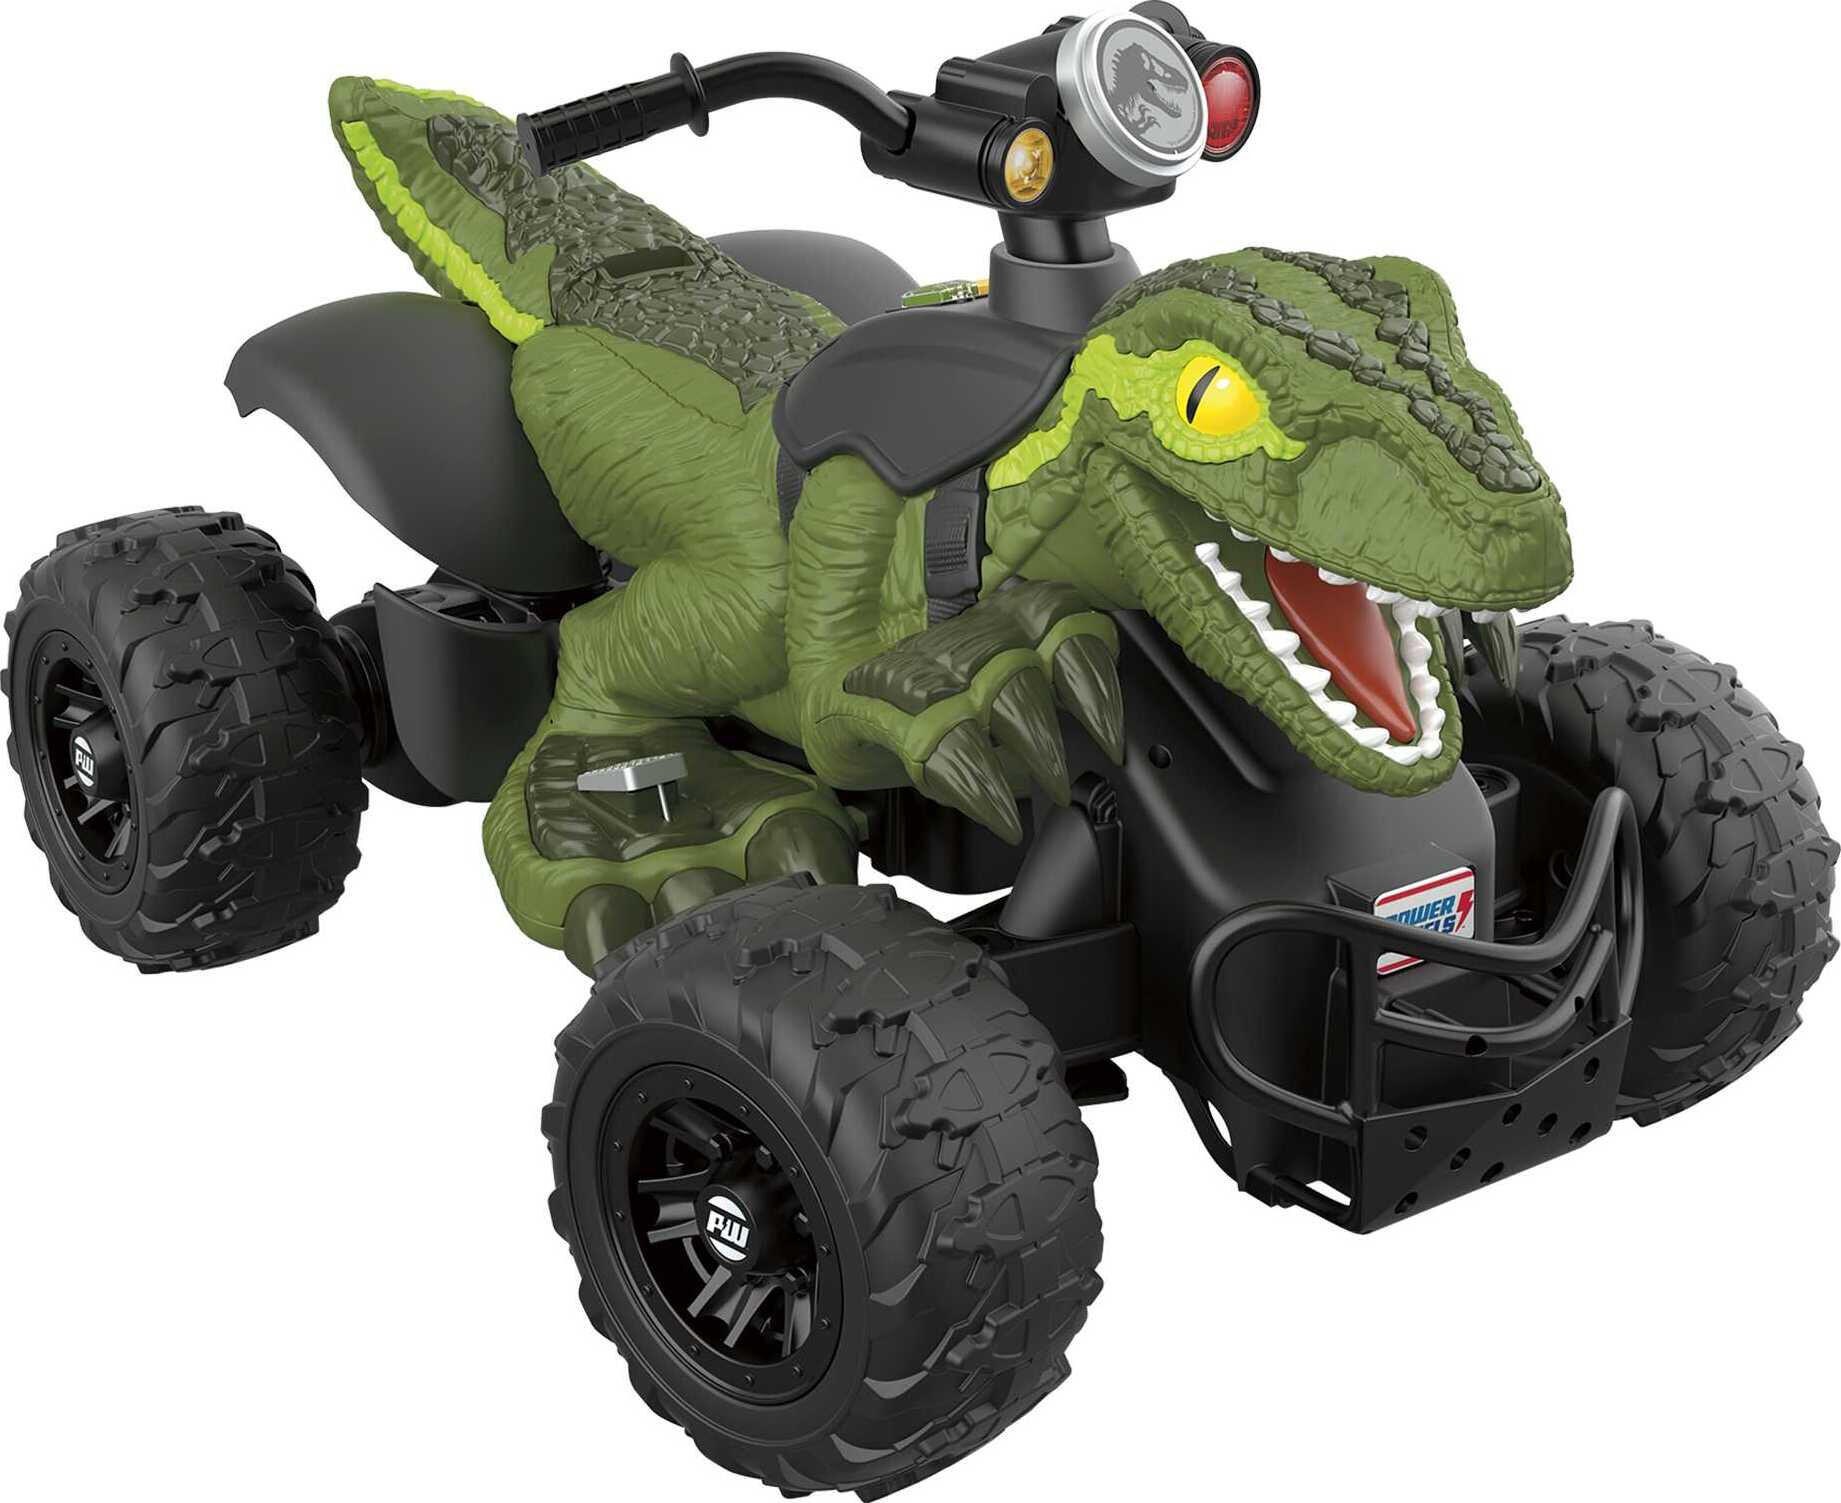 12V Power Wheels Jurassic World Dino Racer Battery-Powered Ride-On ATV Dinosaur Toy, Green - image 1 of 8